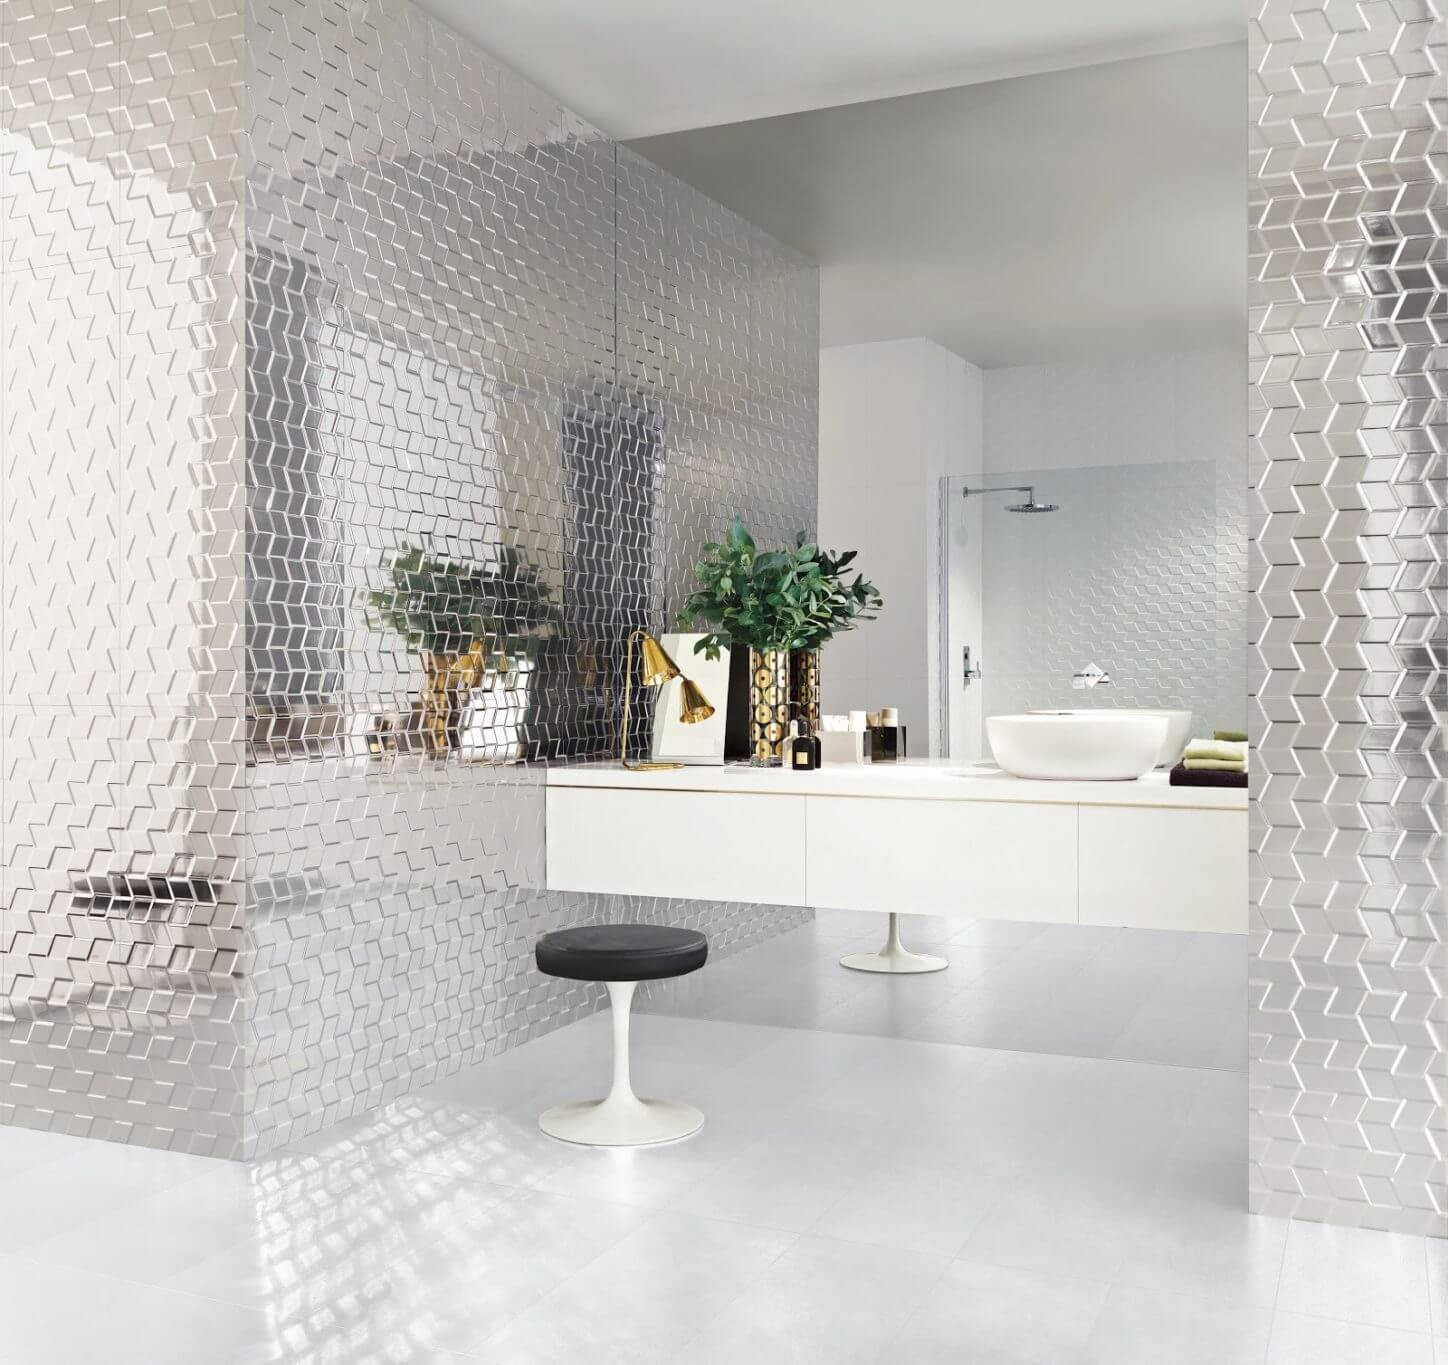 Porcelain Wall Tiles Bathroom
 40 Free Shower Tile Ideas Tips For Choosing Tile